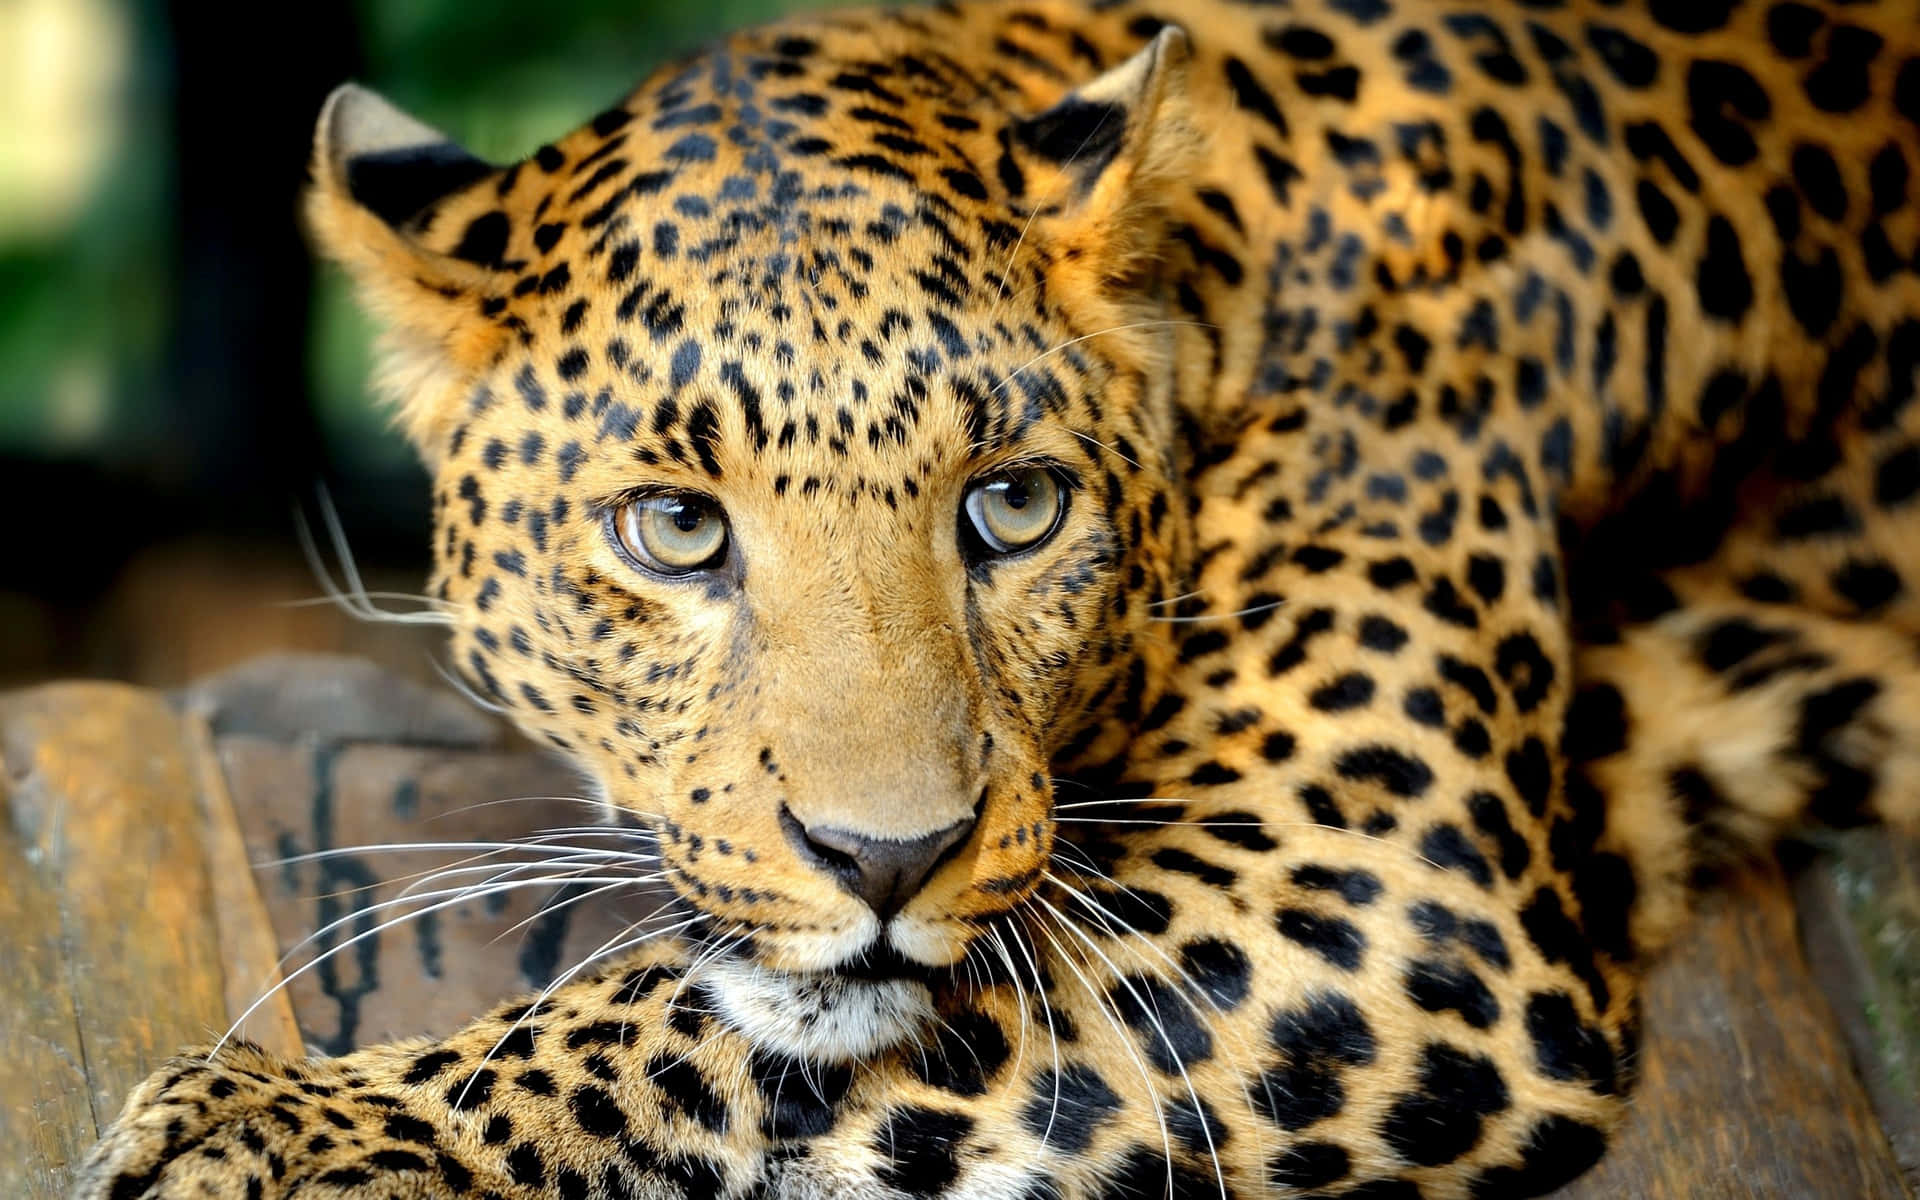 Enmajestætisk Leopard Slapper Af I Sit Naturlige Habitat.